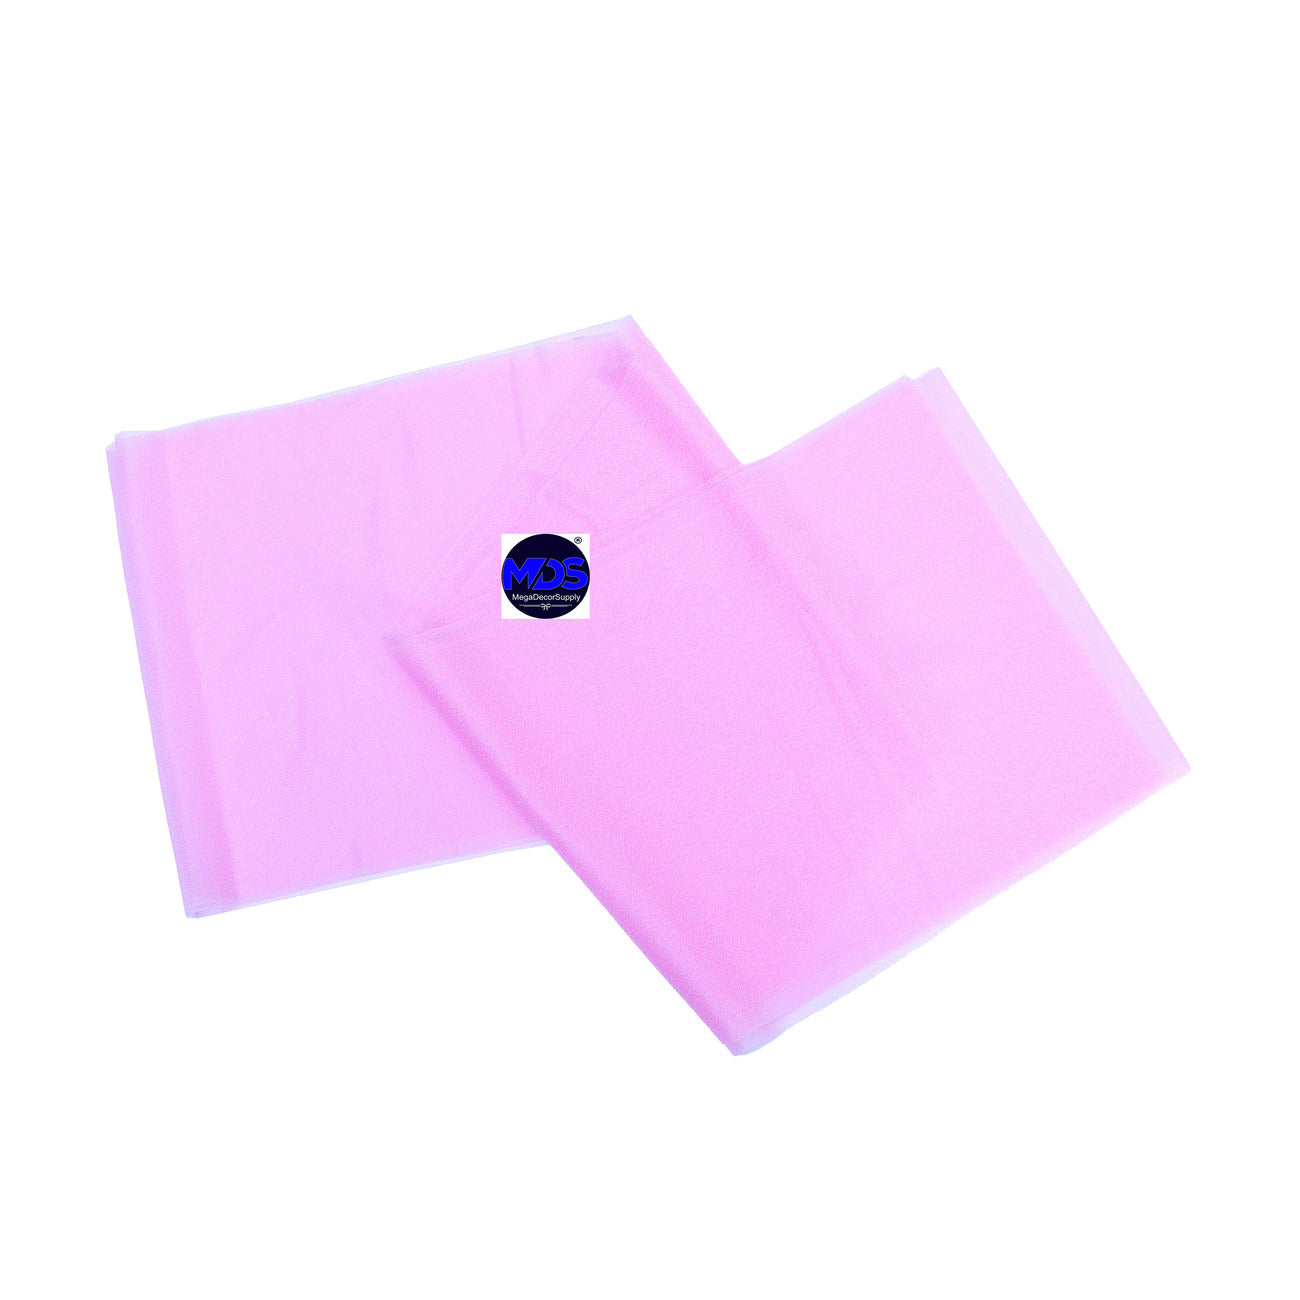 Bubblegum Pink,58f03bb5-6957-40f4-baec-1f6a1f40996b